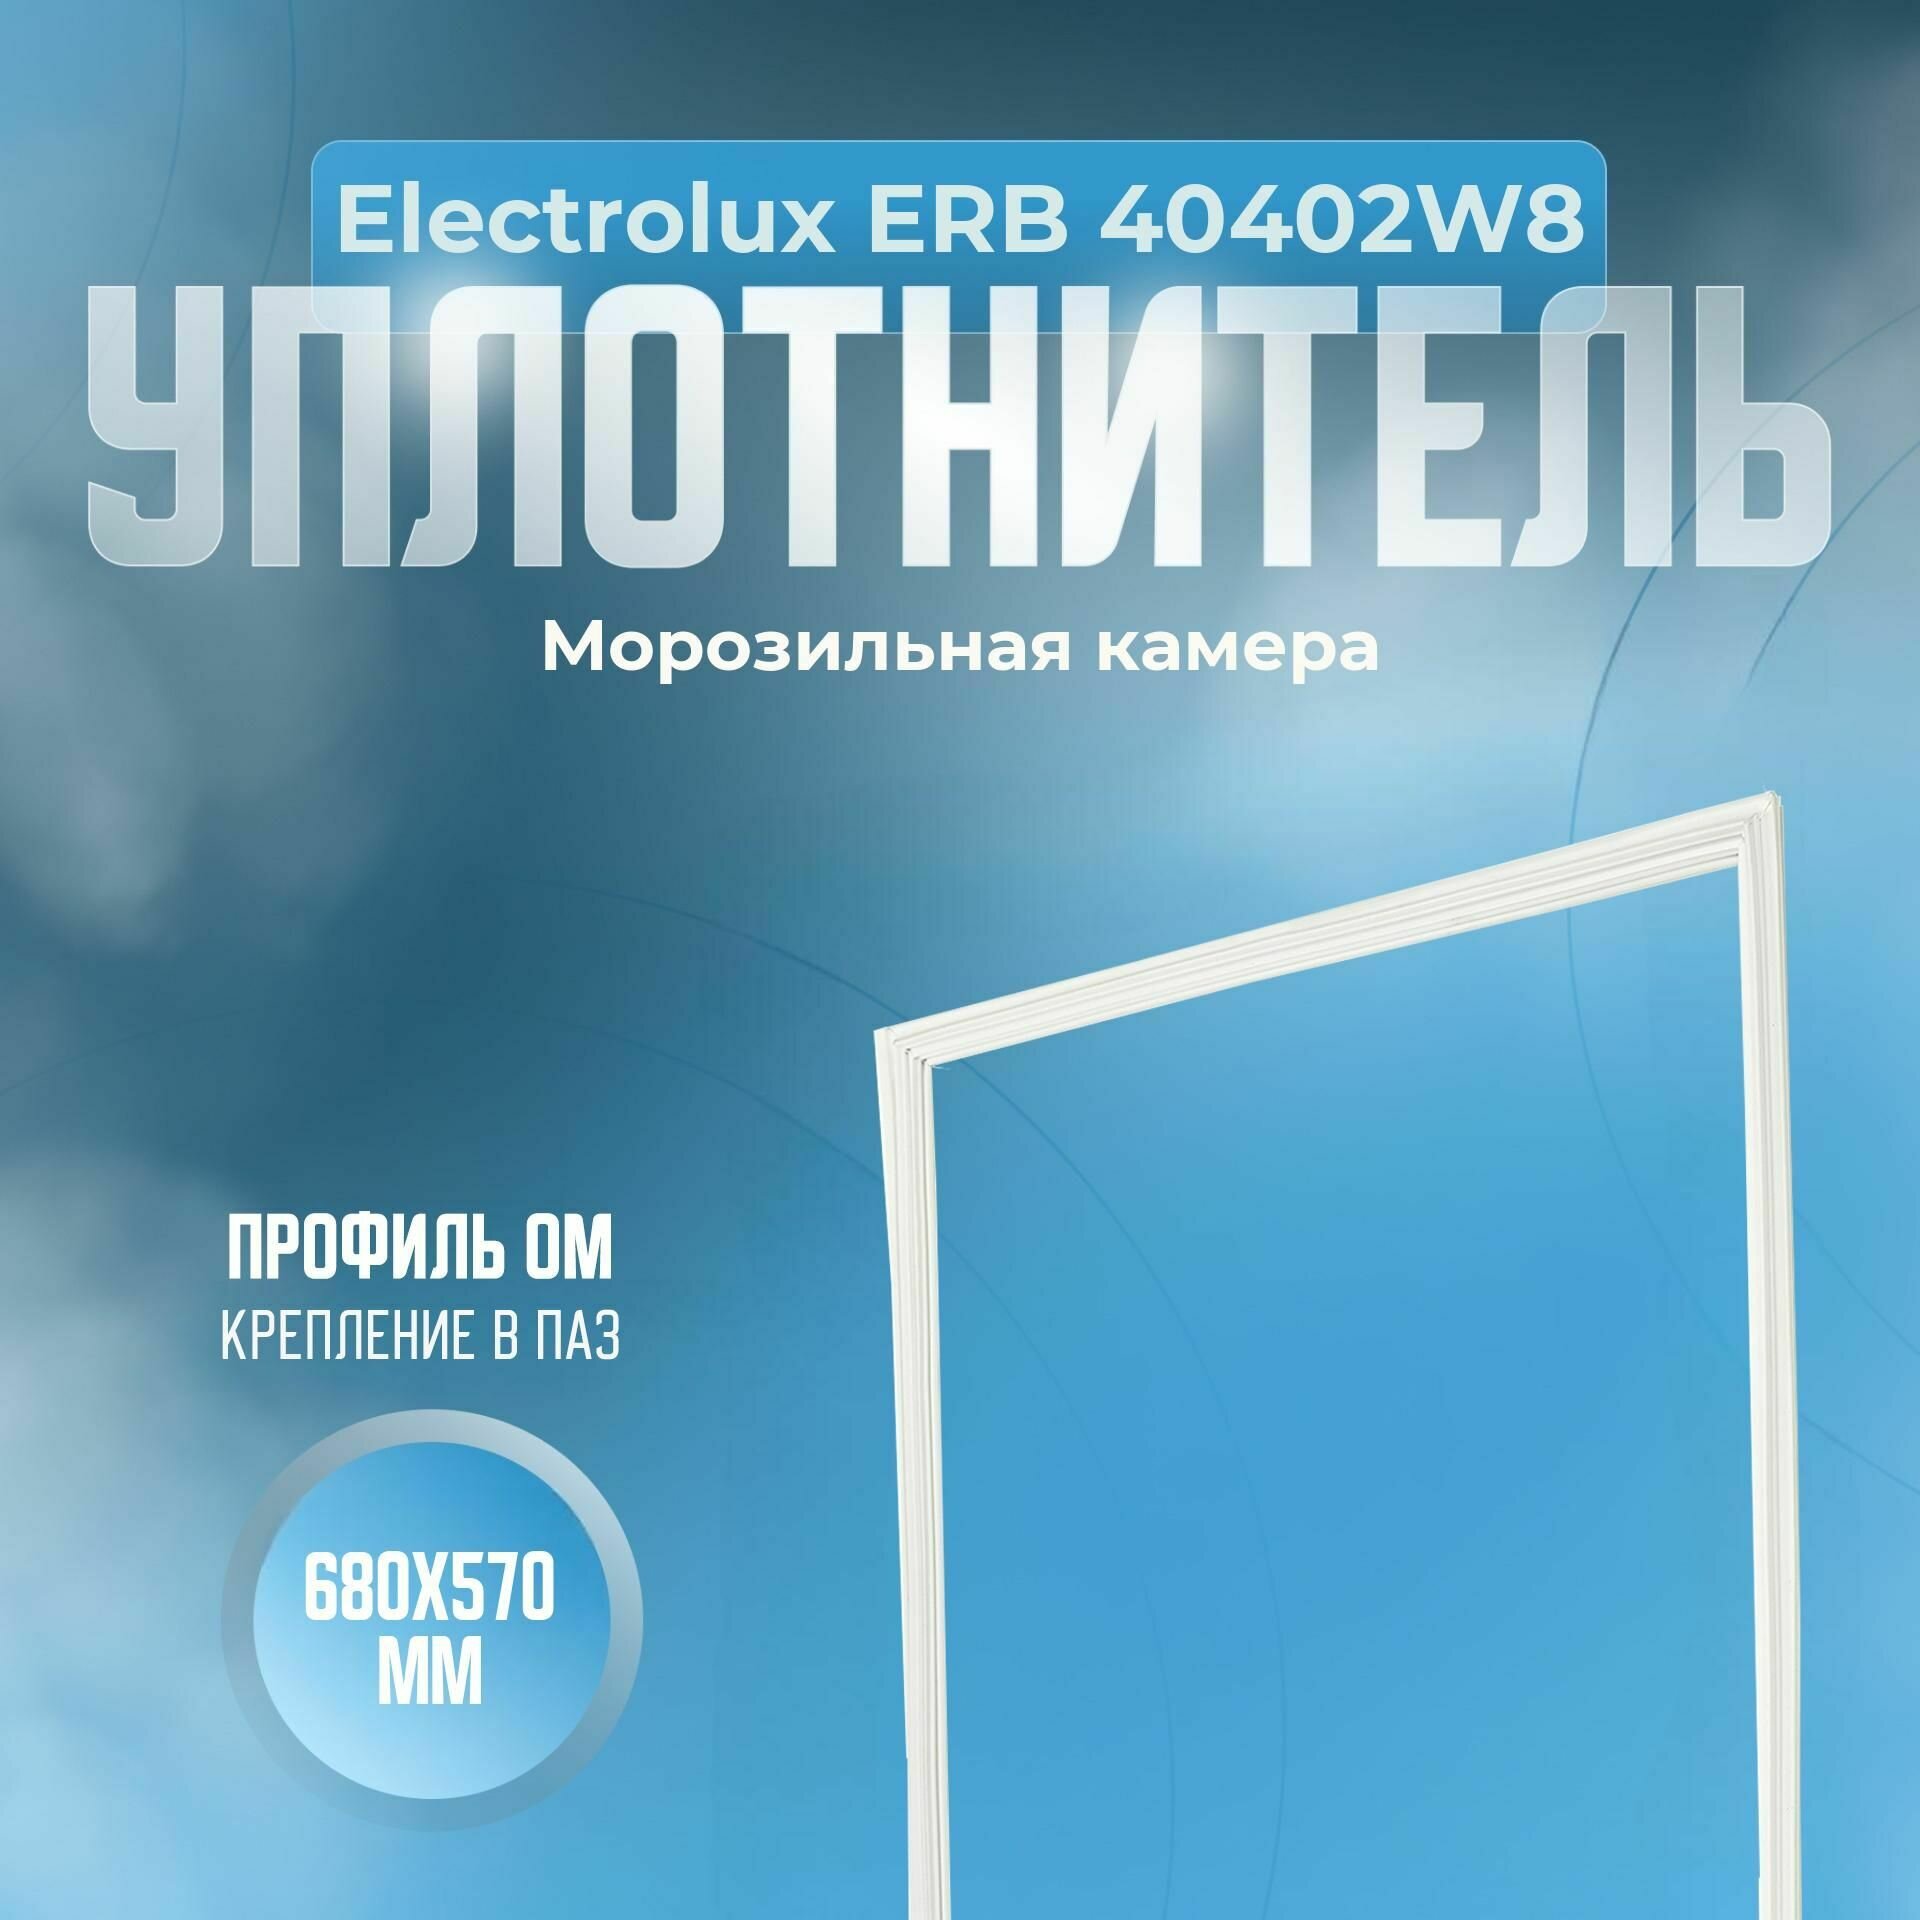 Уплотнитель Electrolux ERB 40402W8. м. к, Размер - 680х570 мм. ОМ